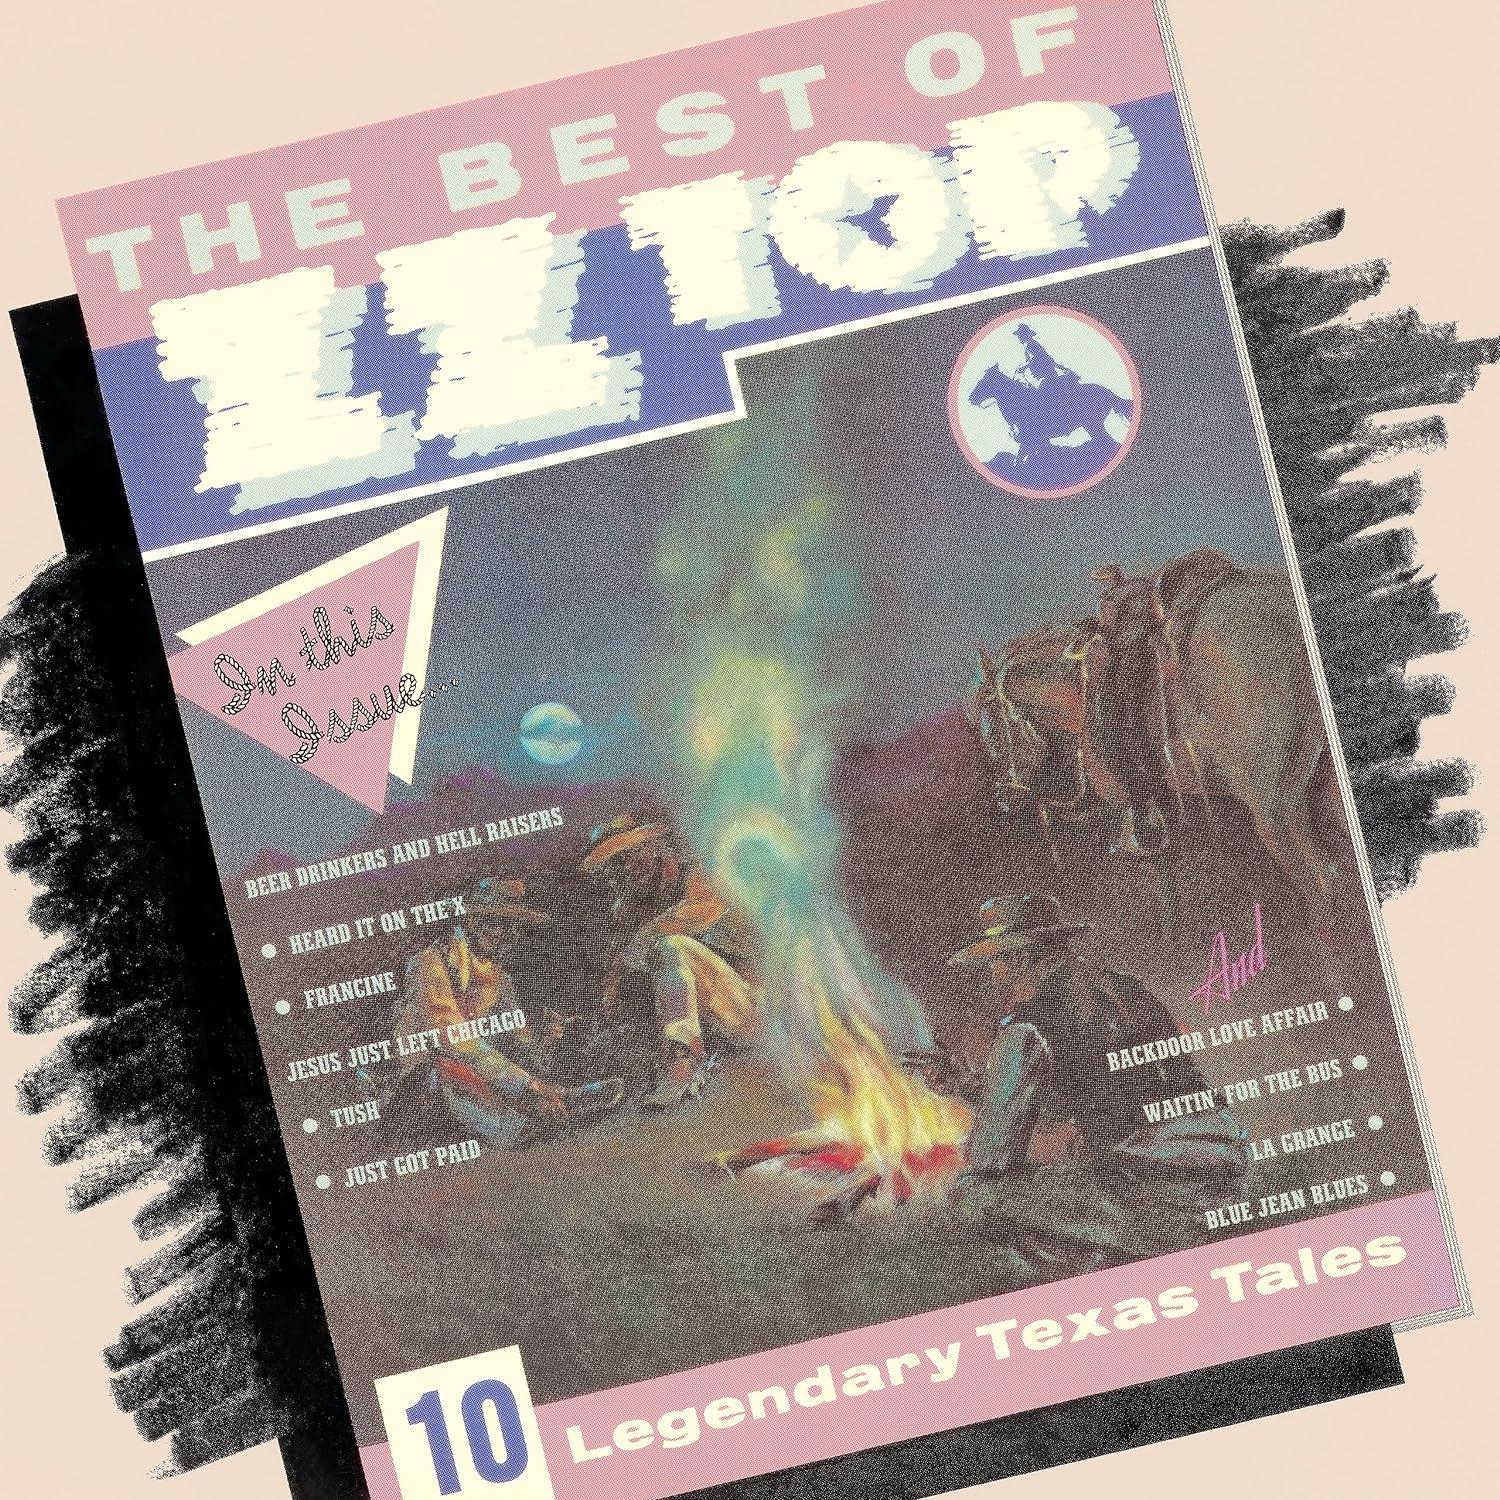 ZZ TOP – BEST OF LP